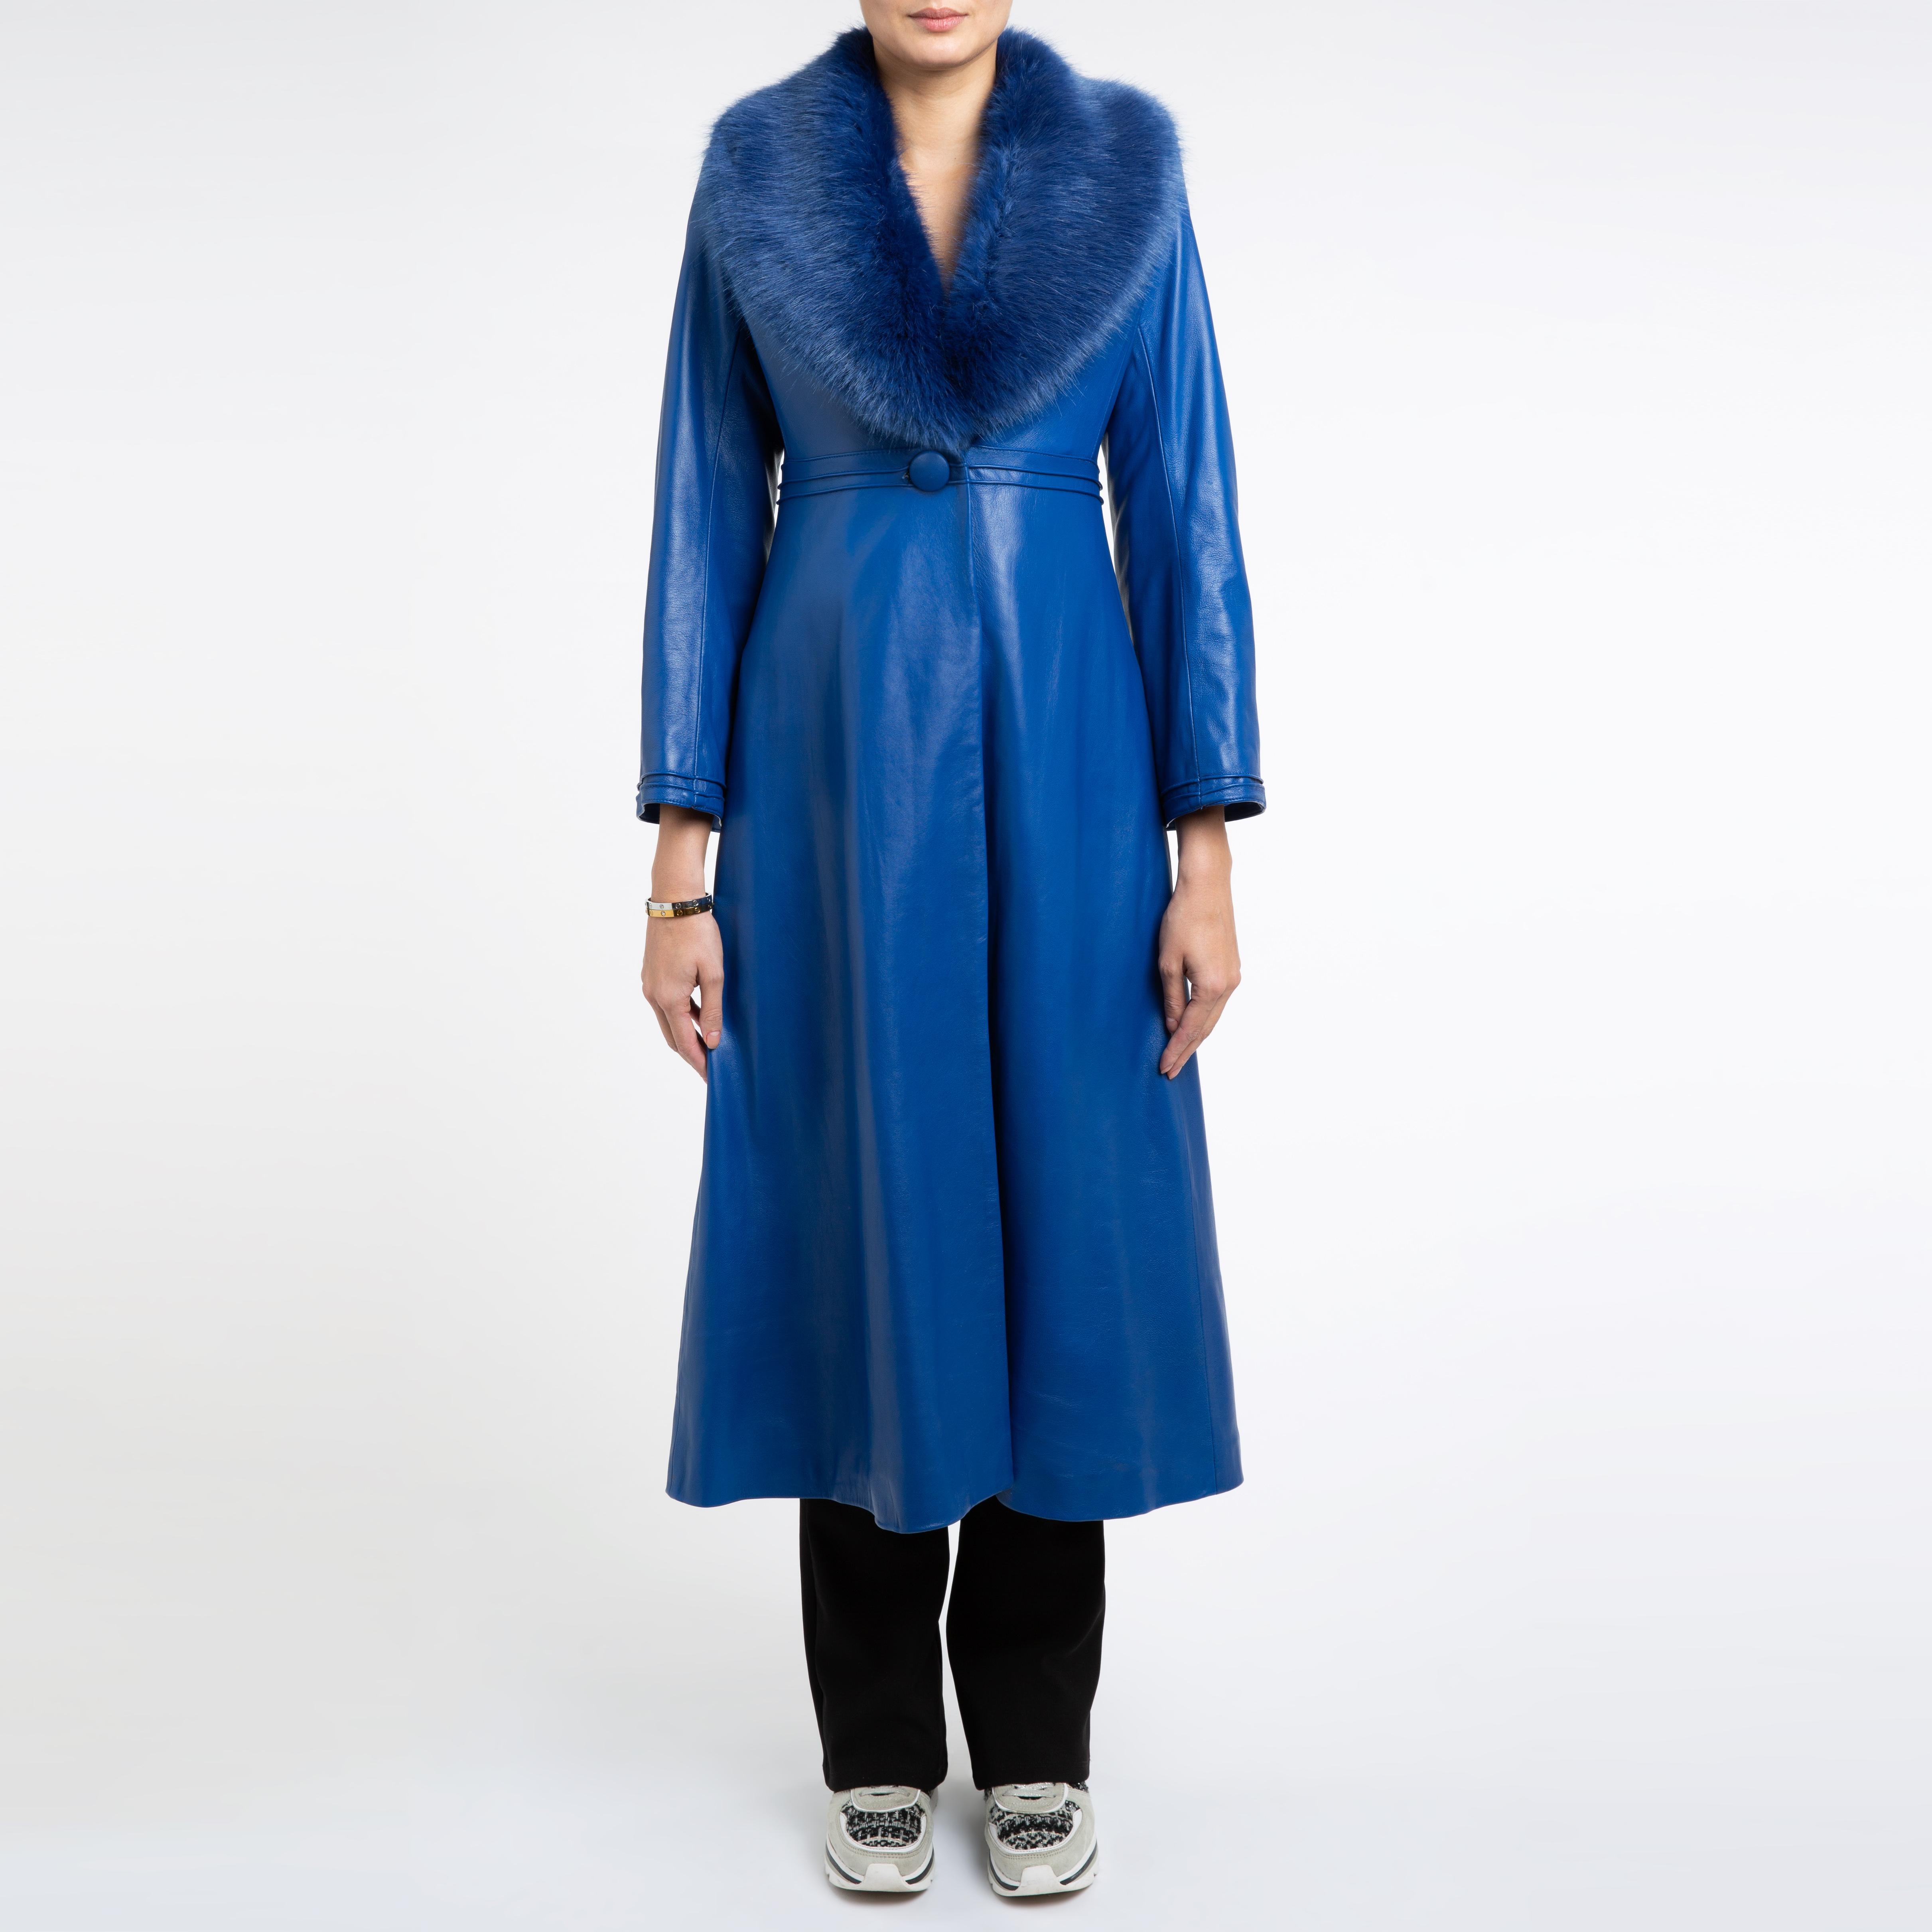 Manteau Edward en cuir bleu avec fausse fourrure Verheyen London, Taille UK 12

Le manteau en cuir Edward créé par Verheyen London est un modèle romantique inspiré des années 1970 et de l'ère édouardienne de la mode.  Un design intemporel à porter